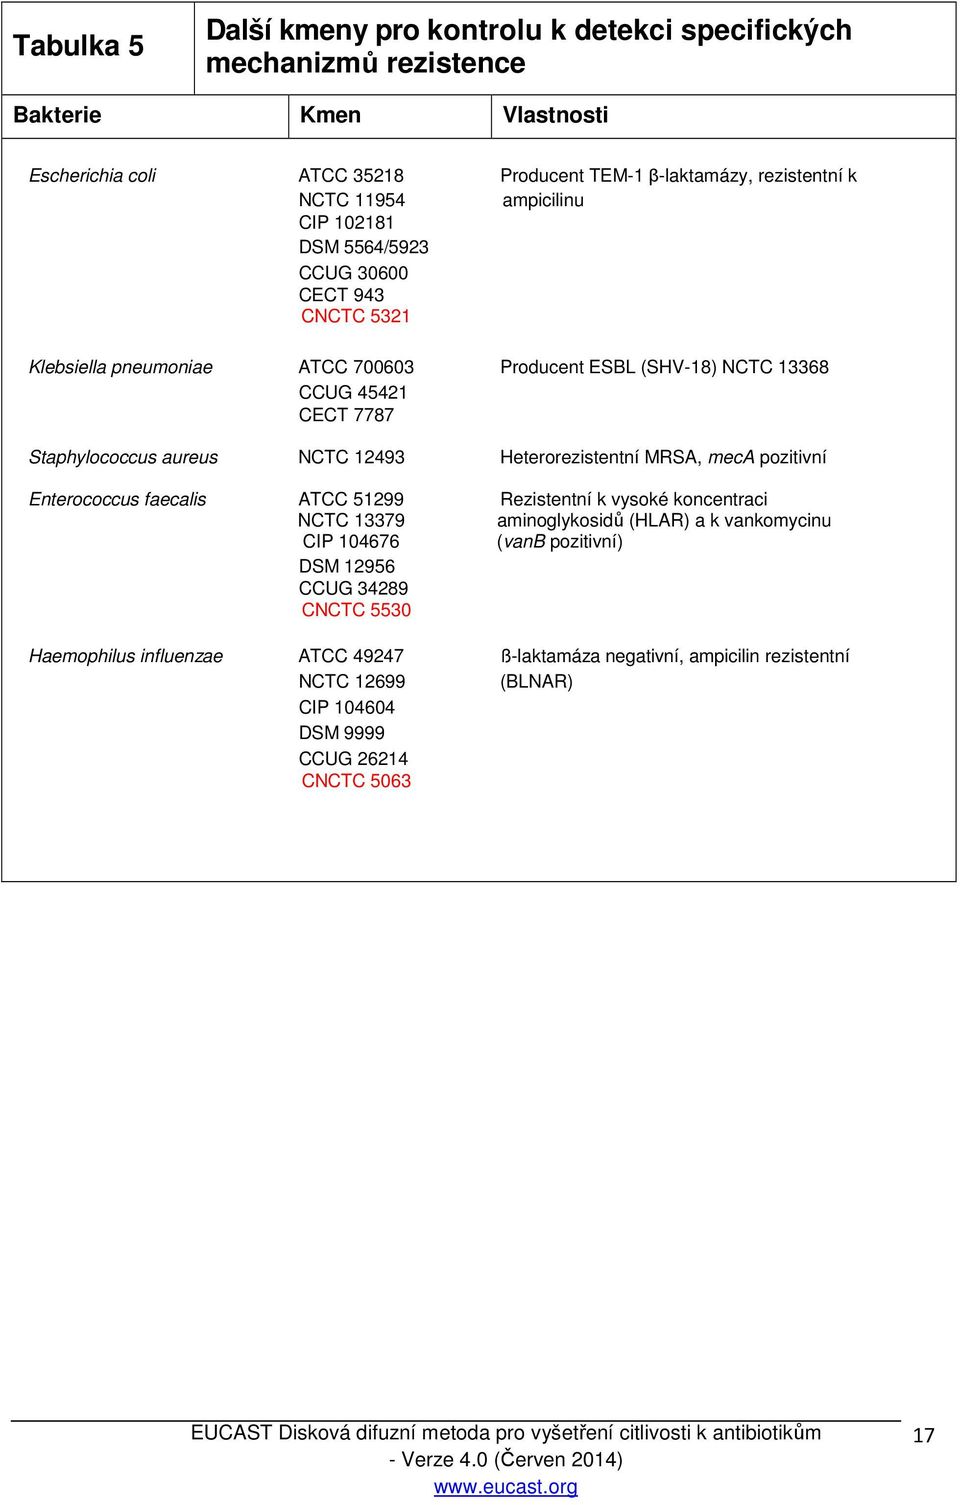 aureus NCTC 12493 Heterorezistentní MRSA, meca pozitivní Enterococcus faecalis ATCC 51299 Rezistentní k vysoké koncentraci NCTC 13379 aminoglykosidů (HLAR) a k vankomycinu CIP 104676